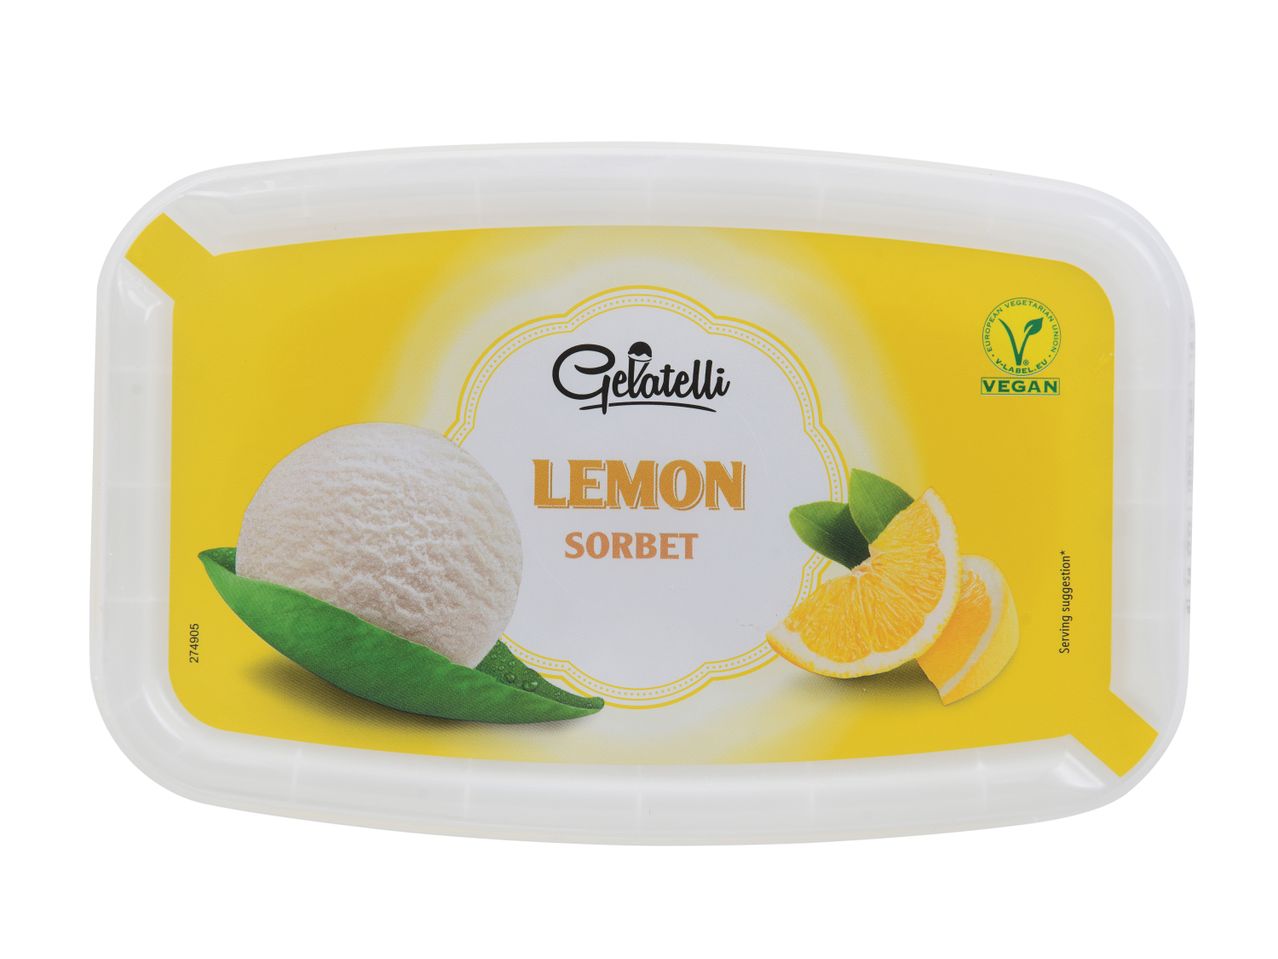 Ver empliada: Gelatelli® Gelado Sorvete de Limão - Imagem 1